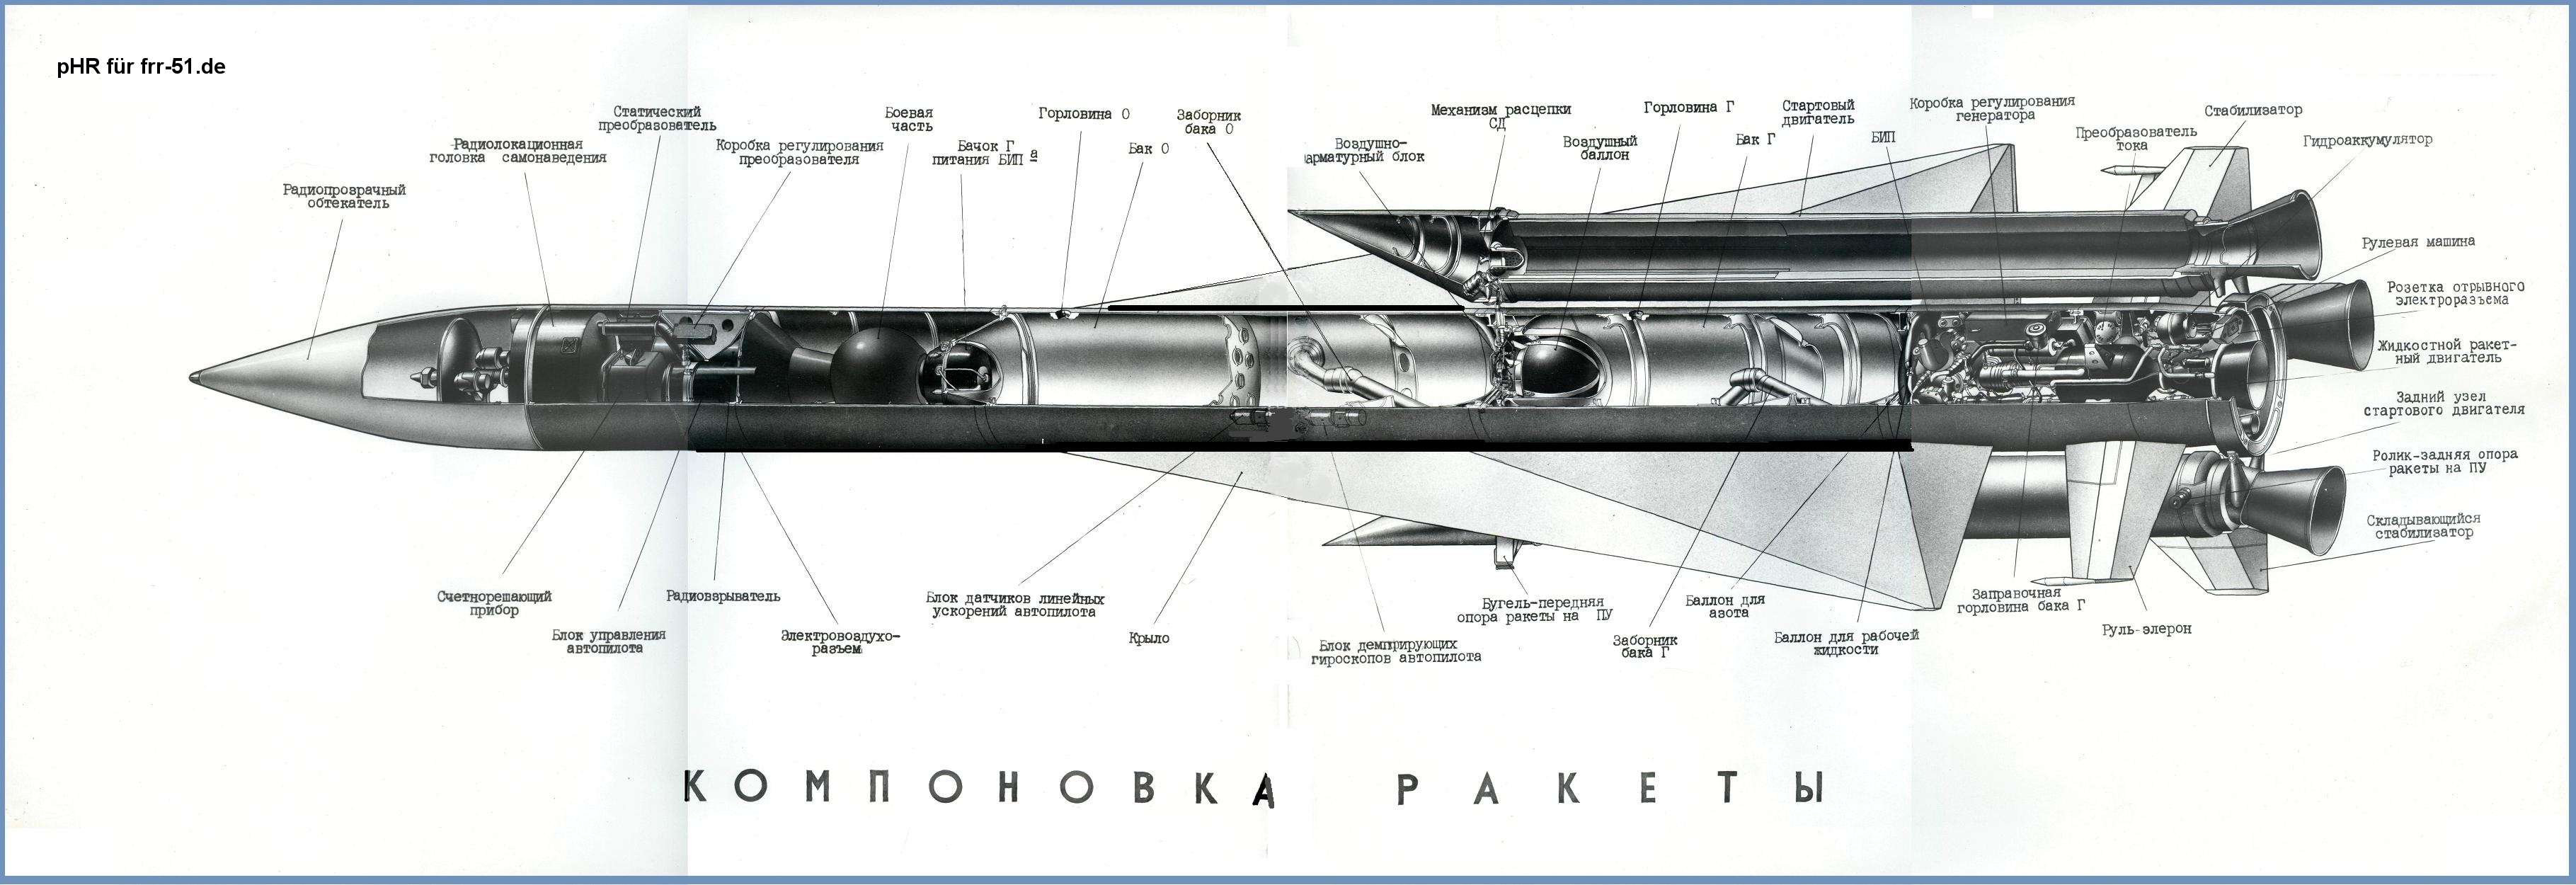 П-120 «малахит» (4к85) — крылатая противокорабельная ракета